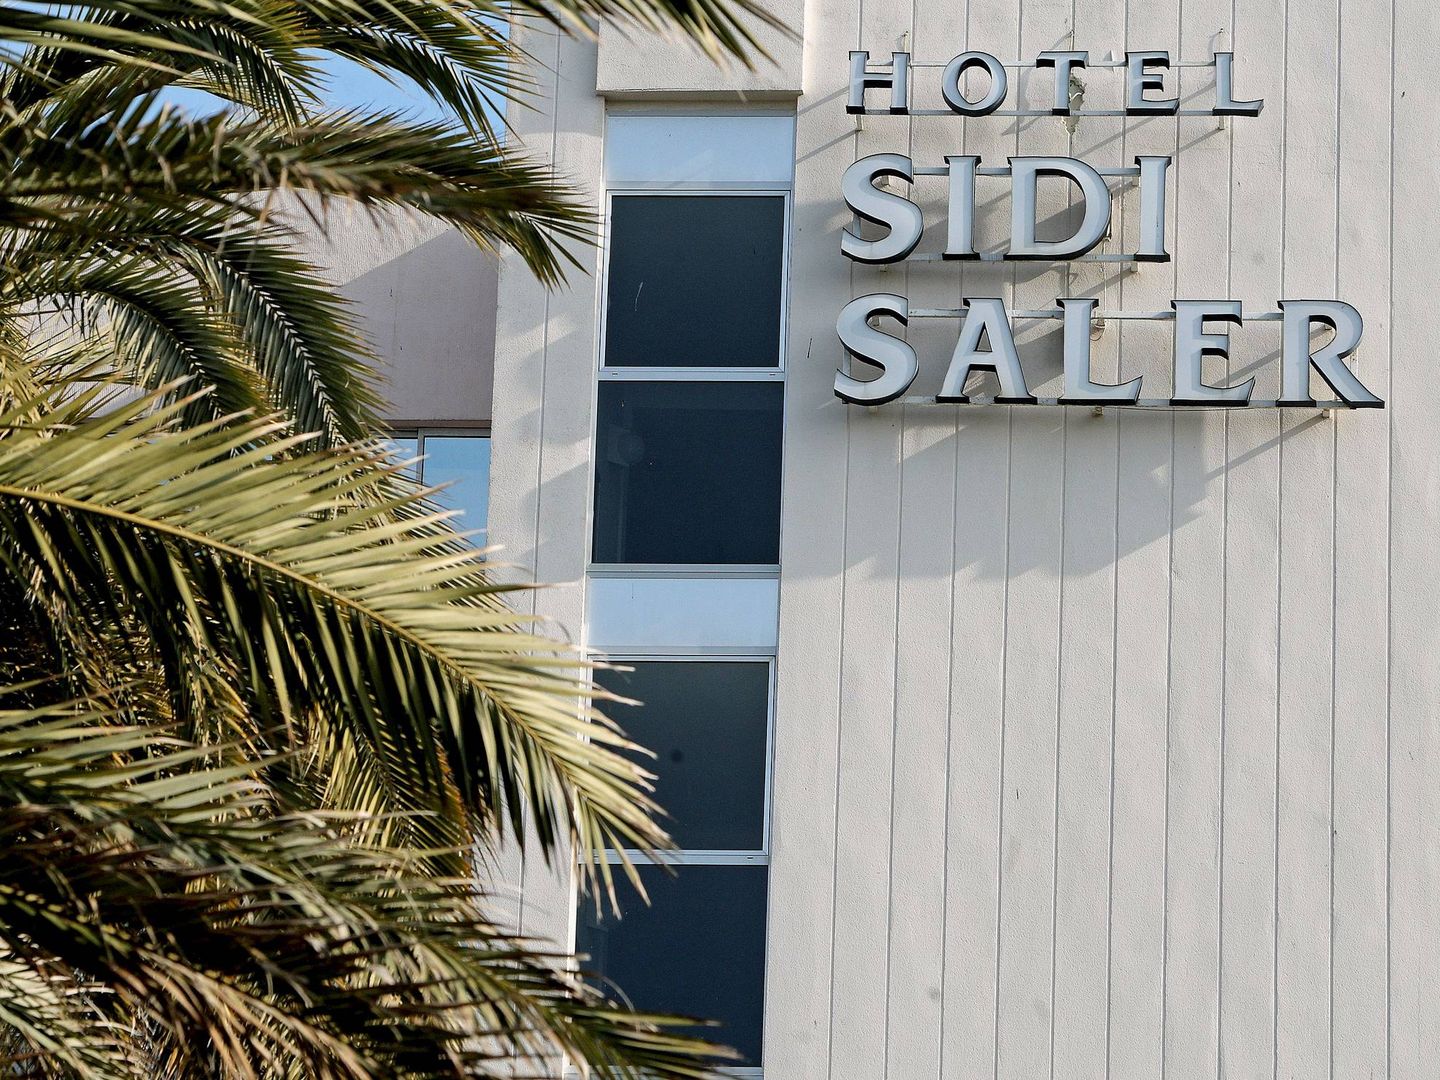 El hotel Sidi Saler de Valencia en 2011. (EFE)